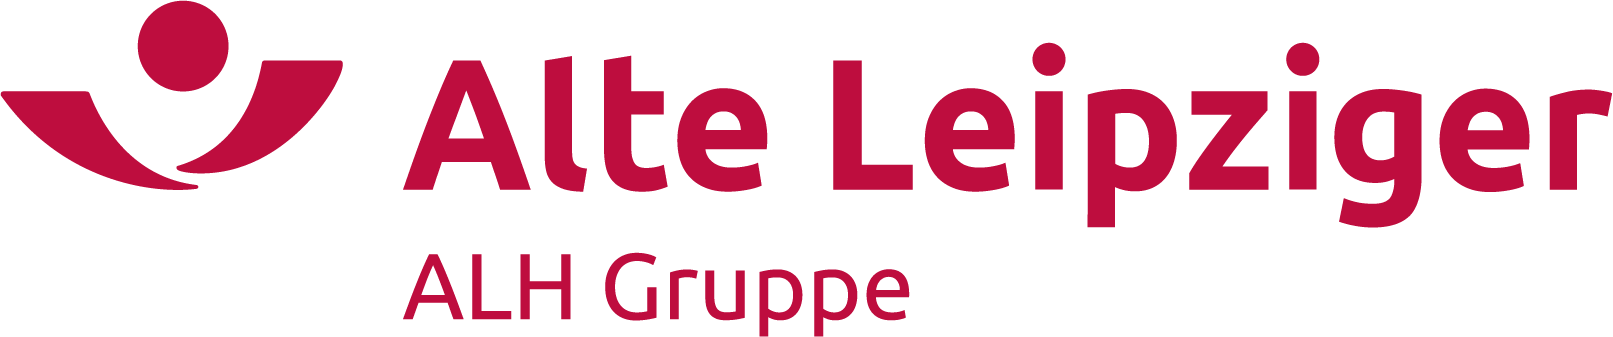 Logo der Alte Leipziger